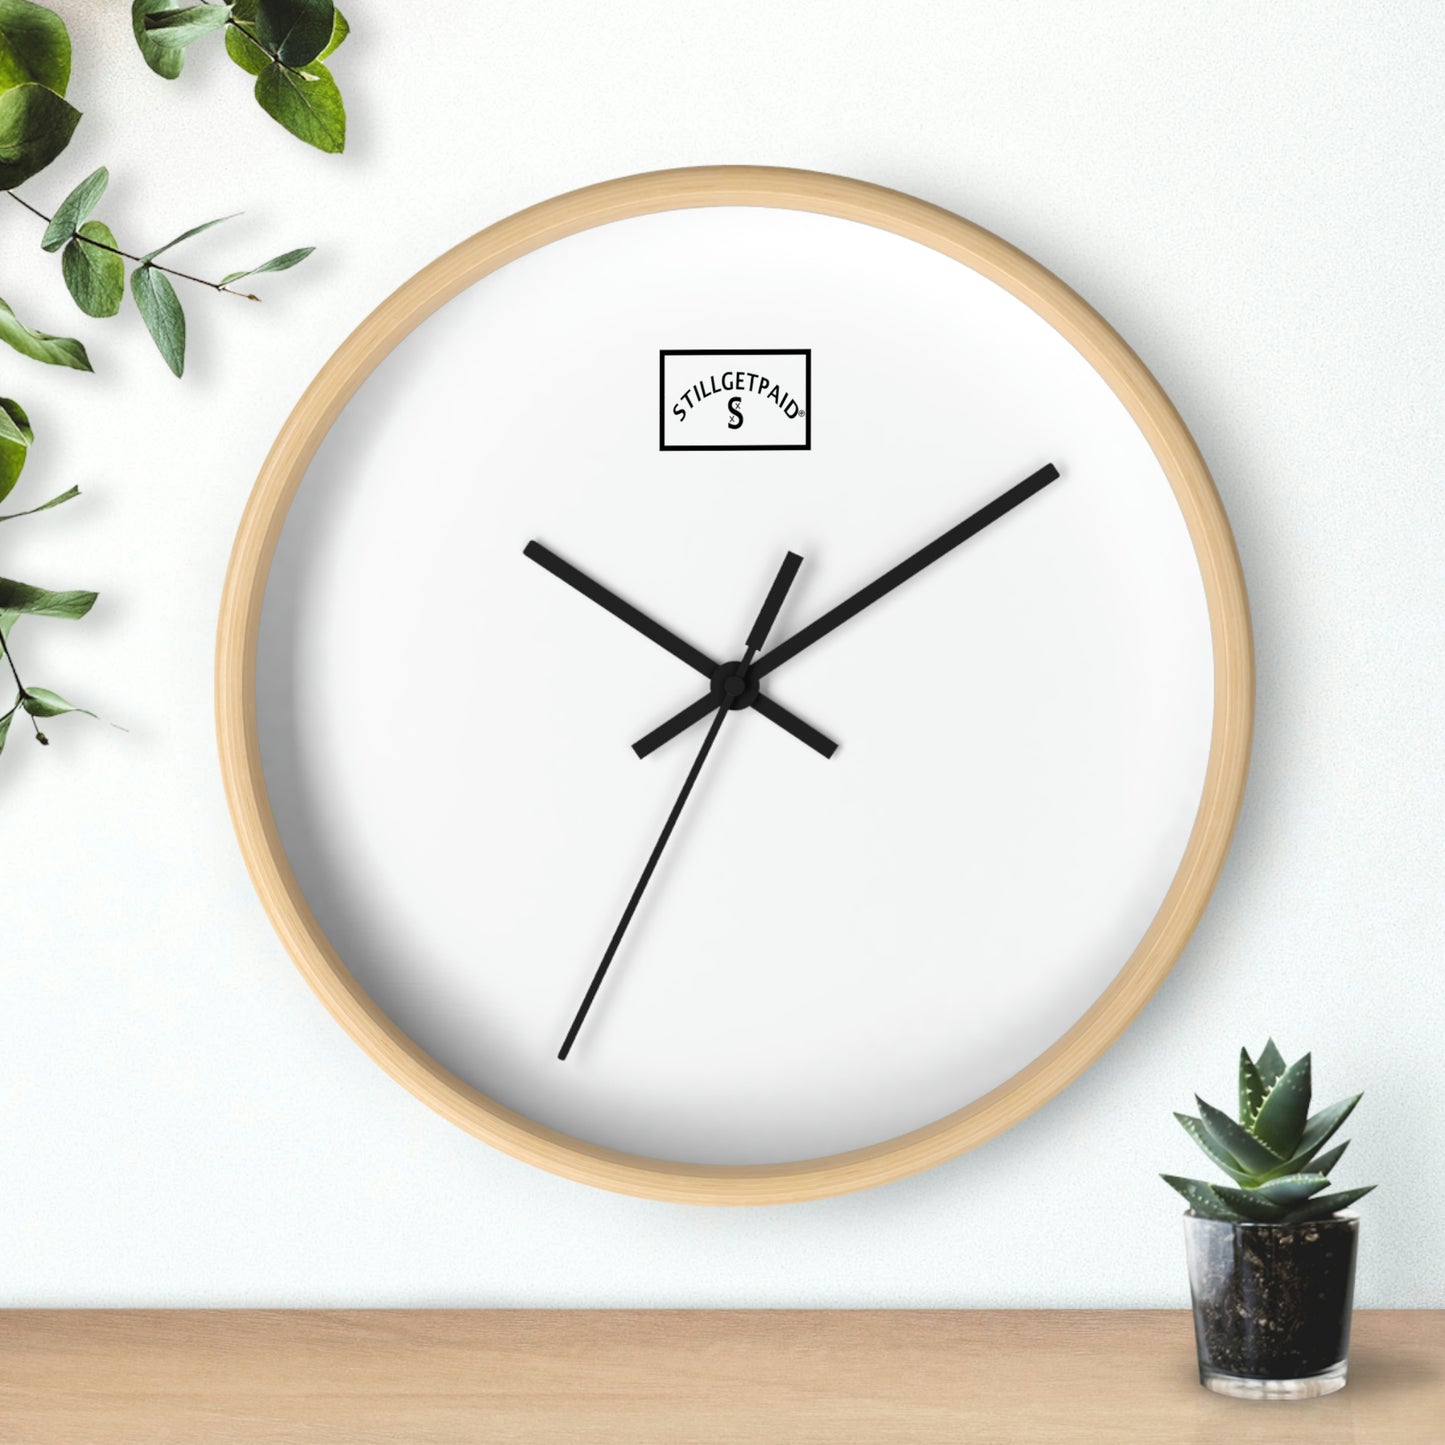 STILLGETPAID®️ APPAREL Wall clock